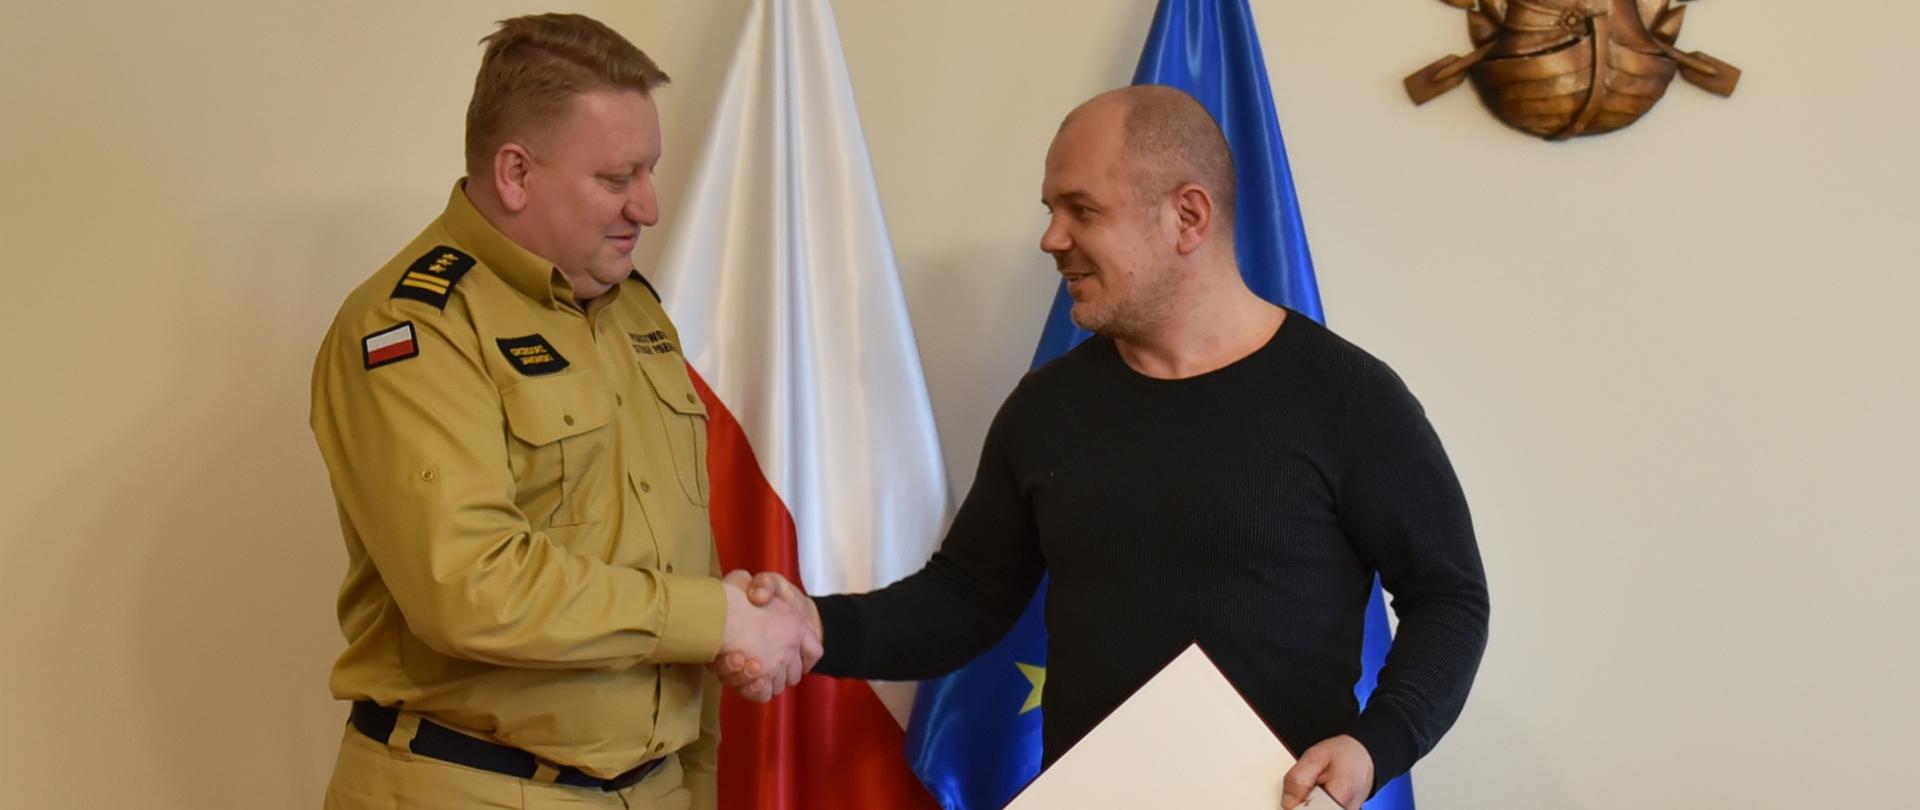 na zdjęciu strażak w umundurowaniu służbowym w kolorze piaskowym oraz mężczyzna w swetrze i jeansach, który trzyma w ręce teczkę z dokumentem, obaj uściskają sobie dłonie w tle flagi polski i unii europejskiej,